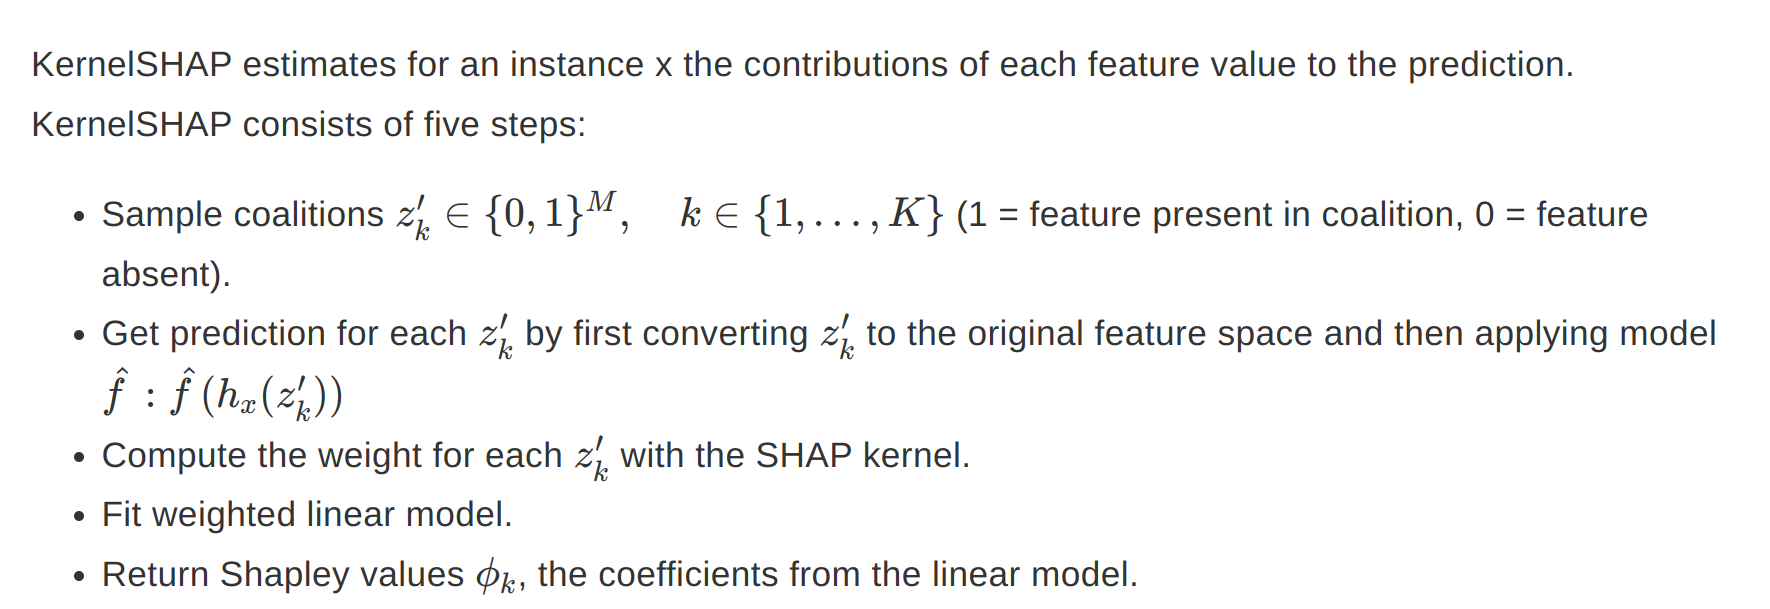 Steps for calculating kernel shap